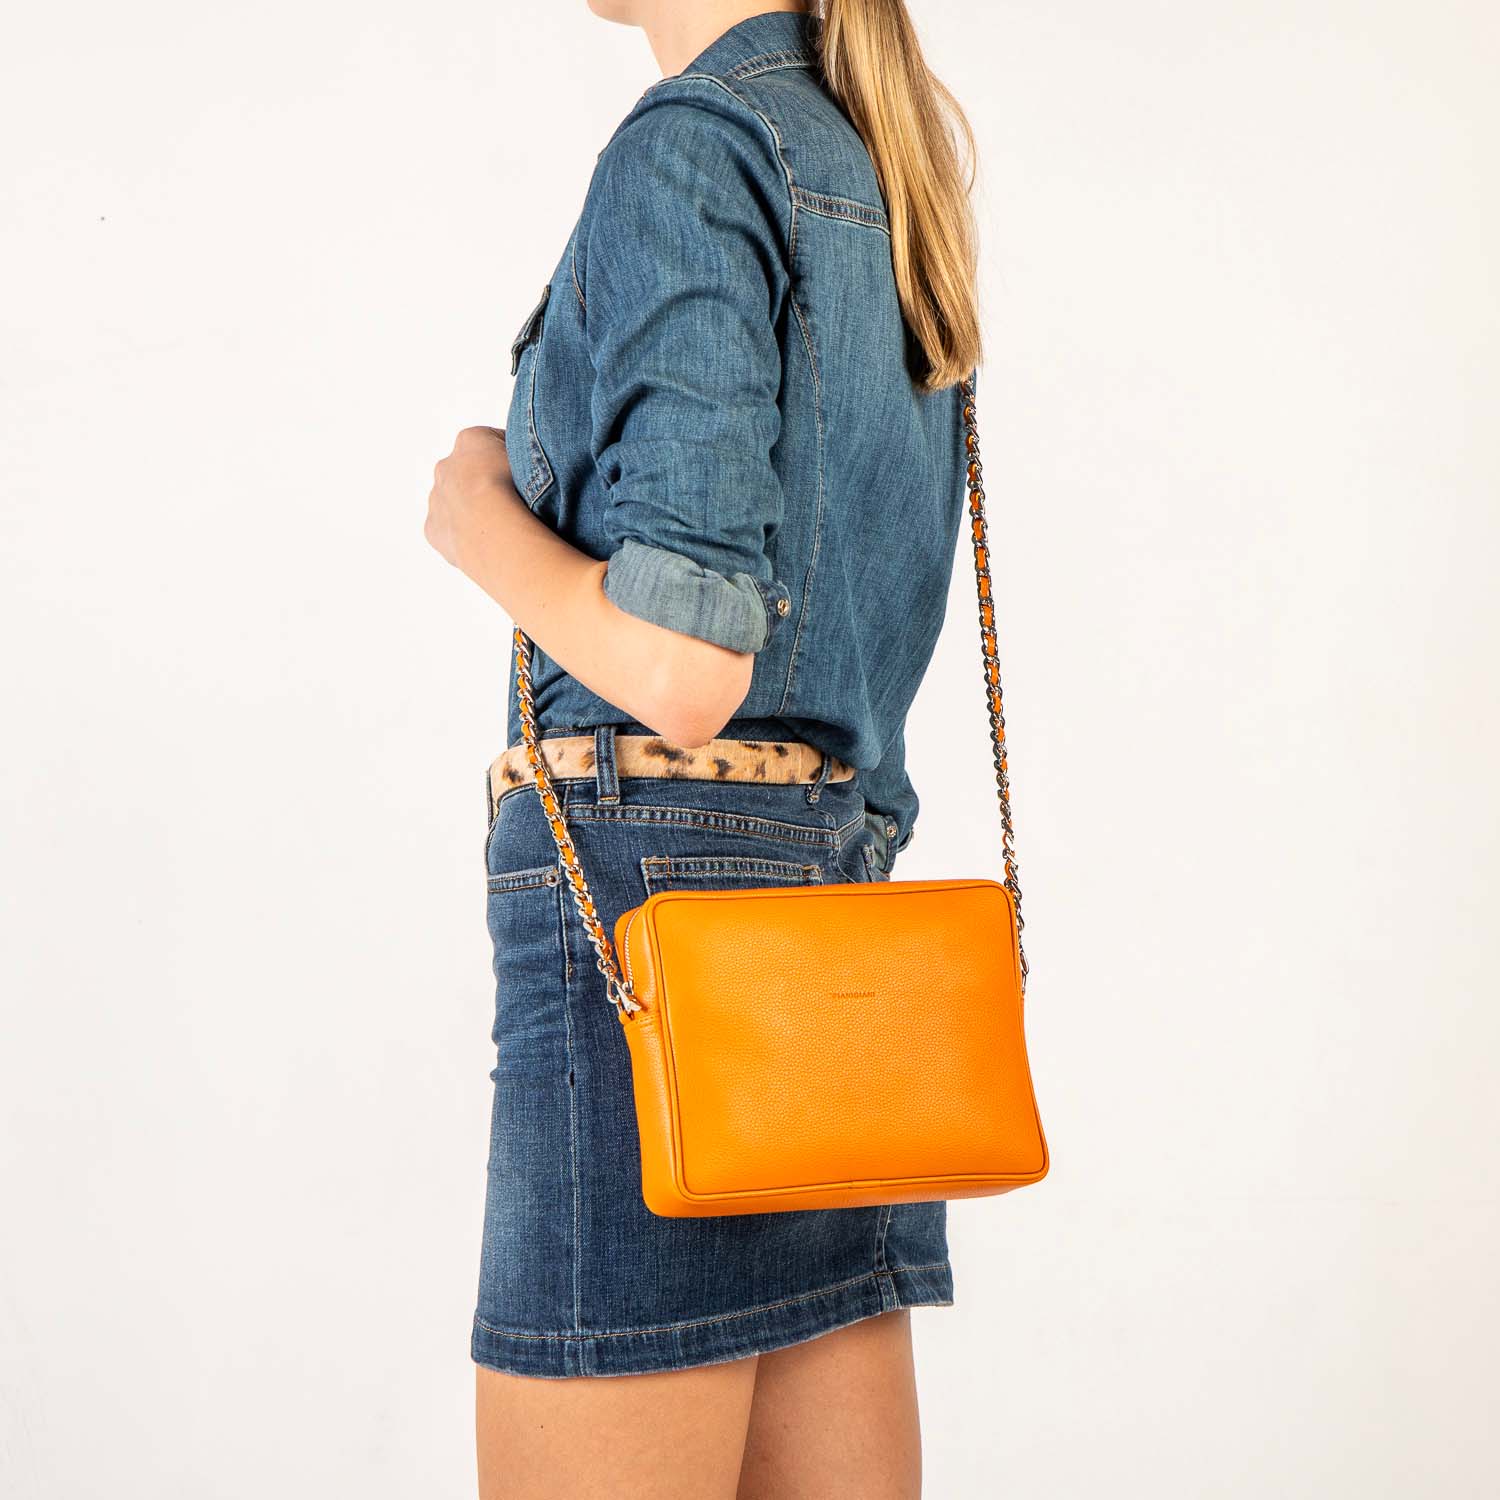 Borsa donna a tracolla in pelle arancione,prodotta a mano presso Pianigiani bags